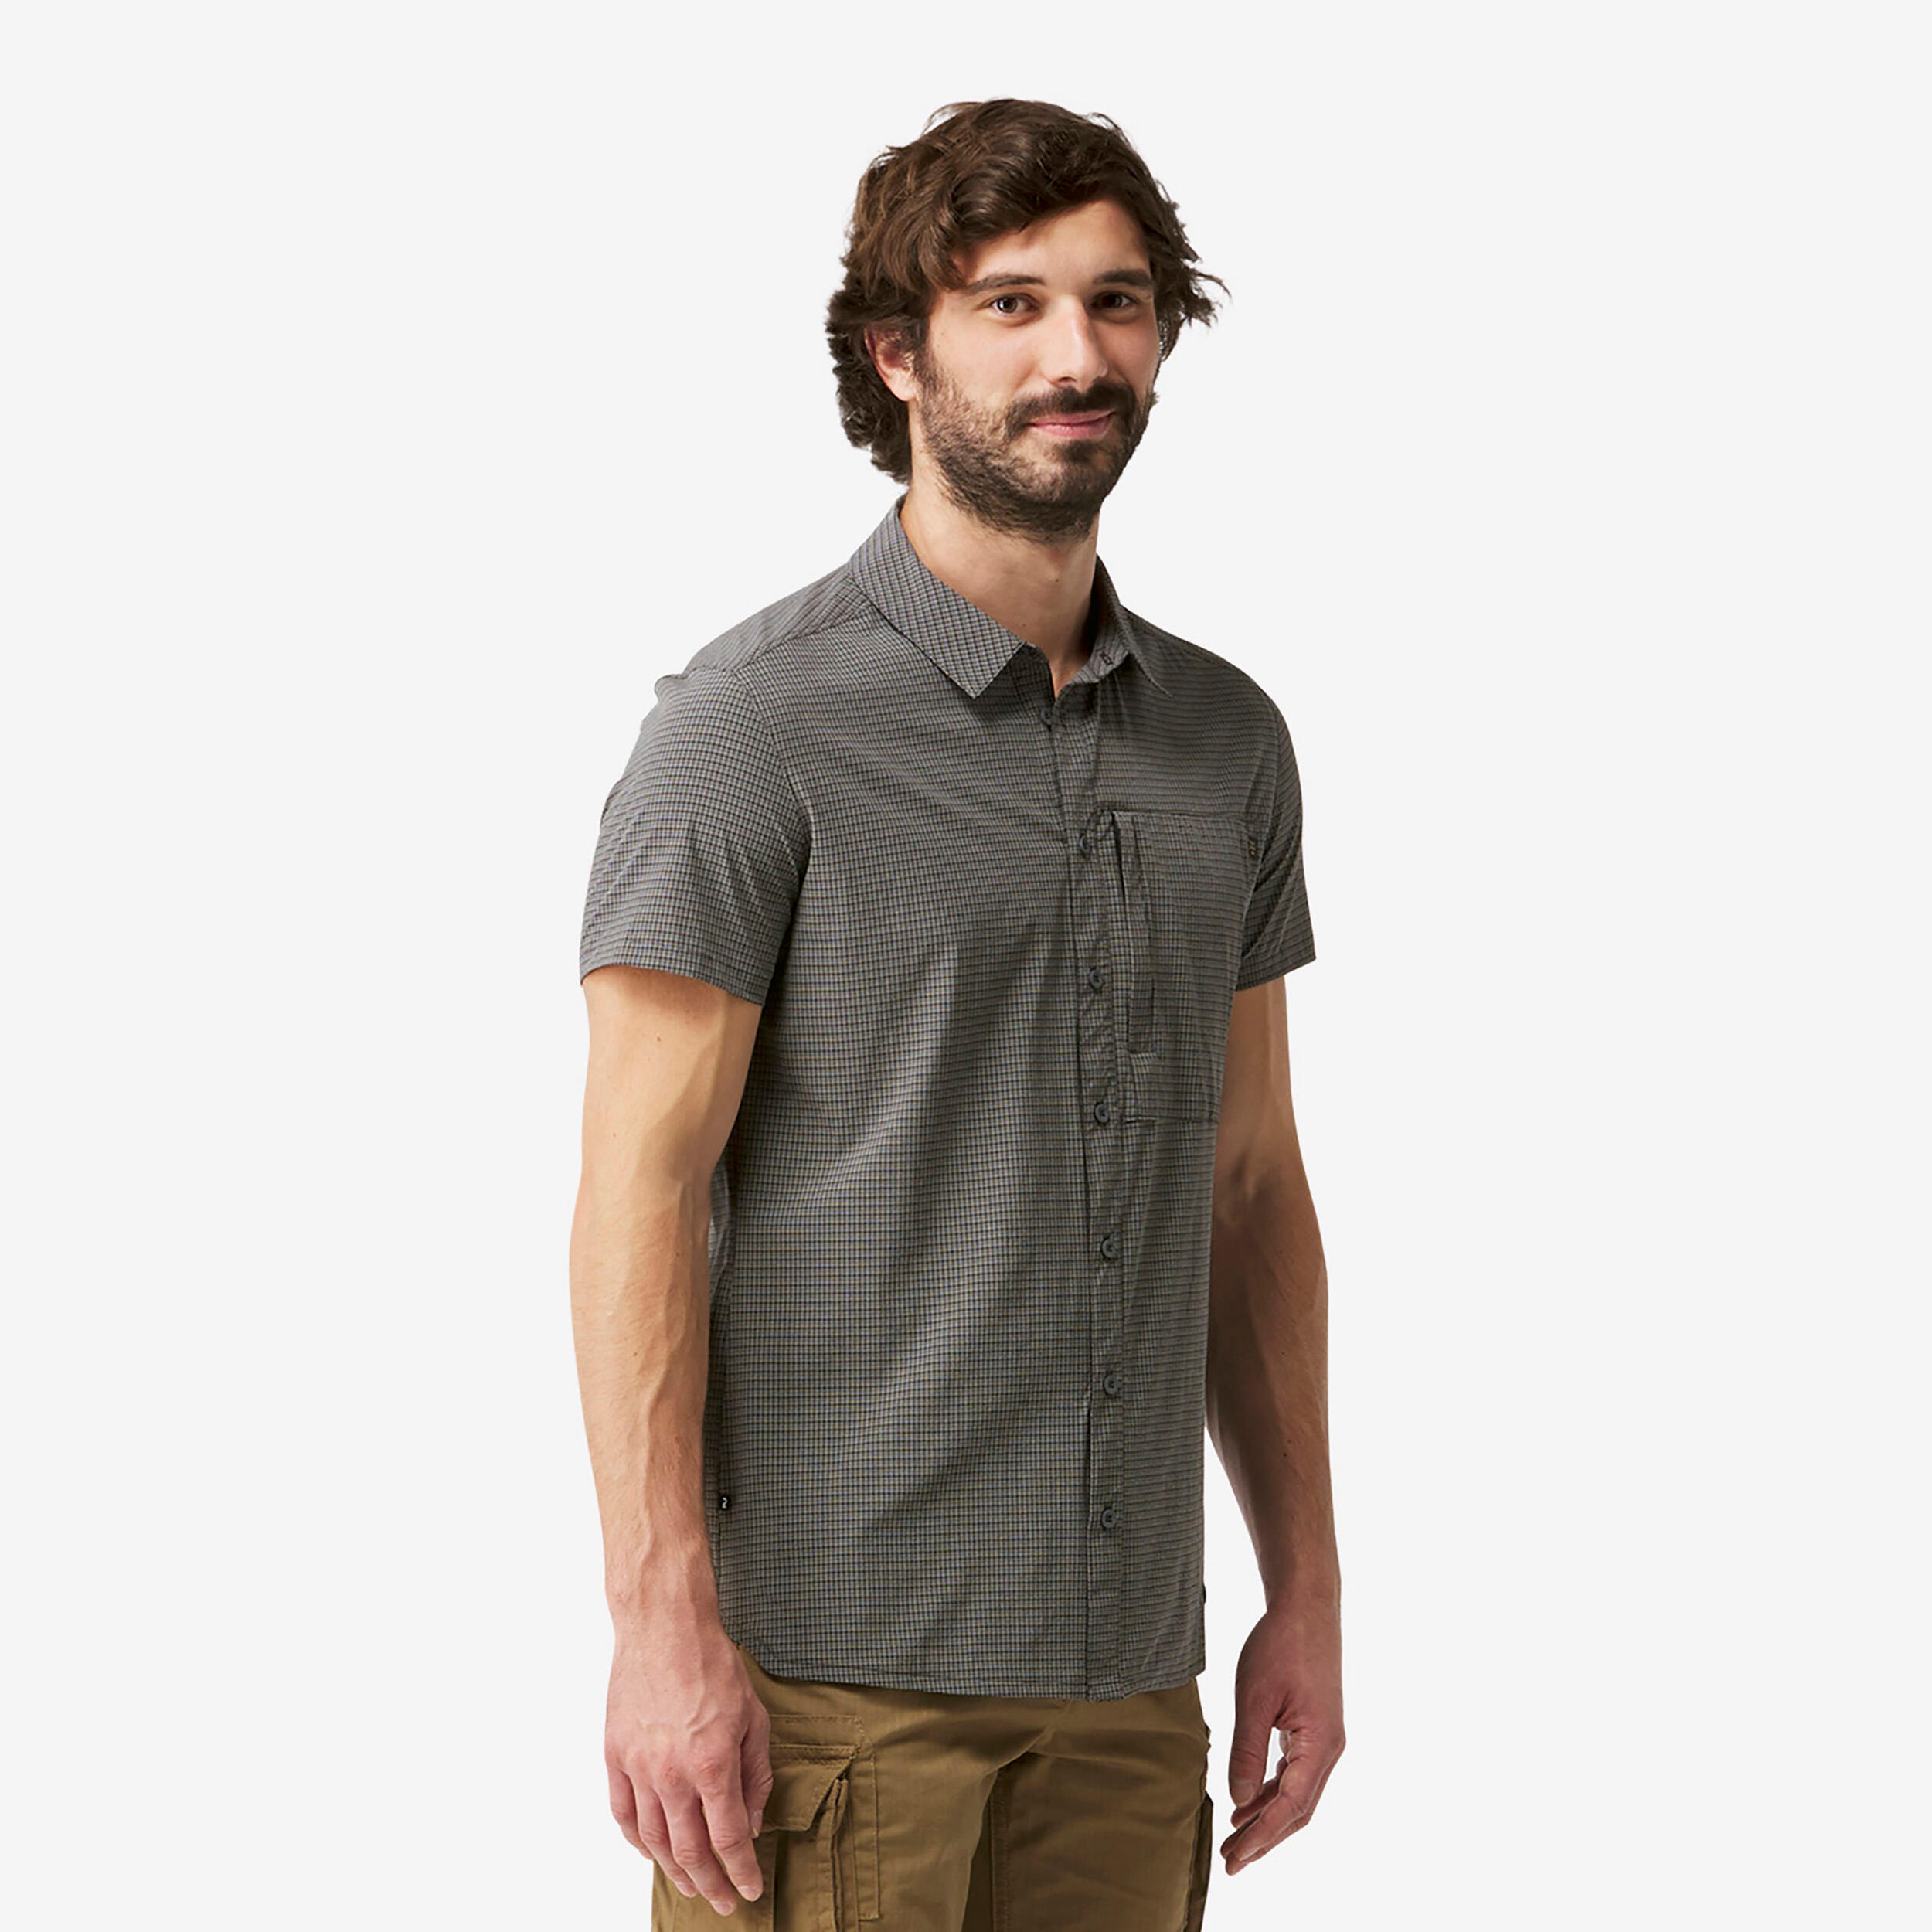 FORCLAZ Men's Hiking Shirt - NH 500